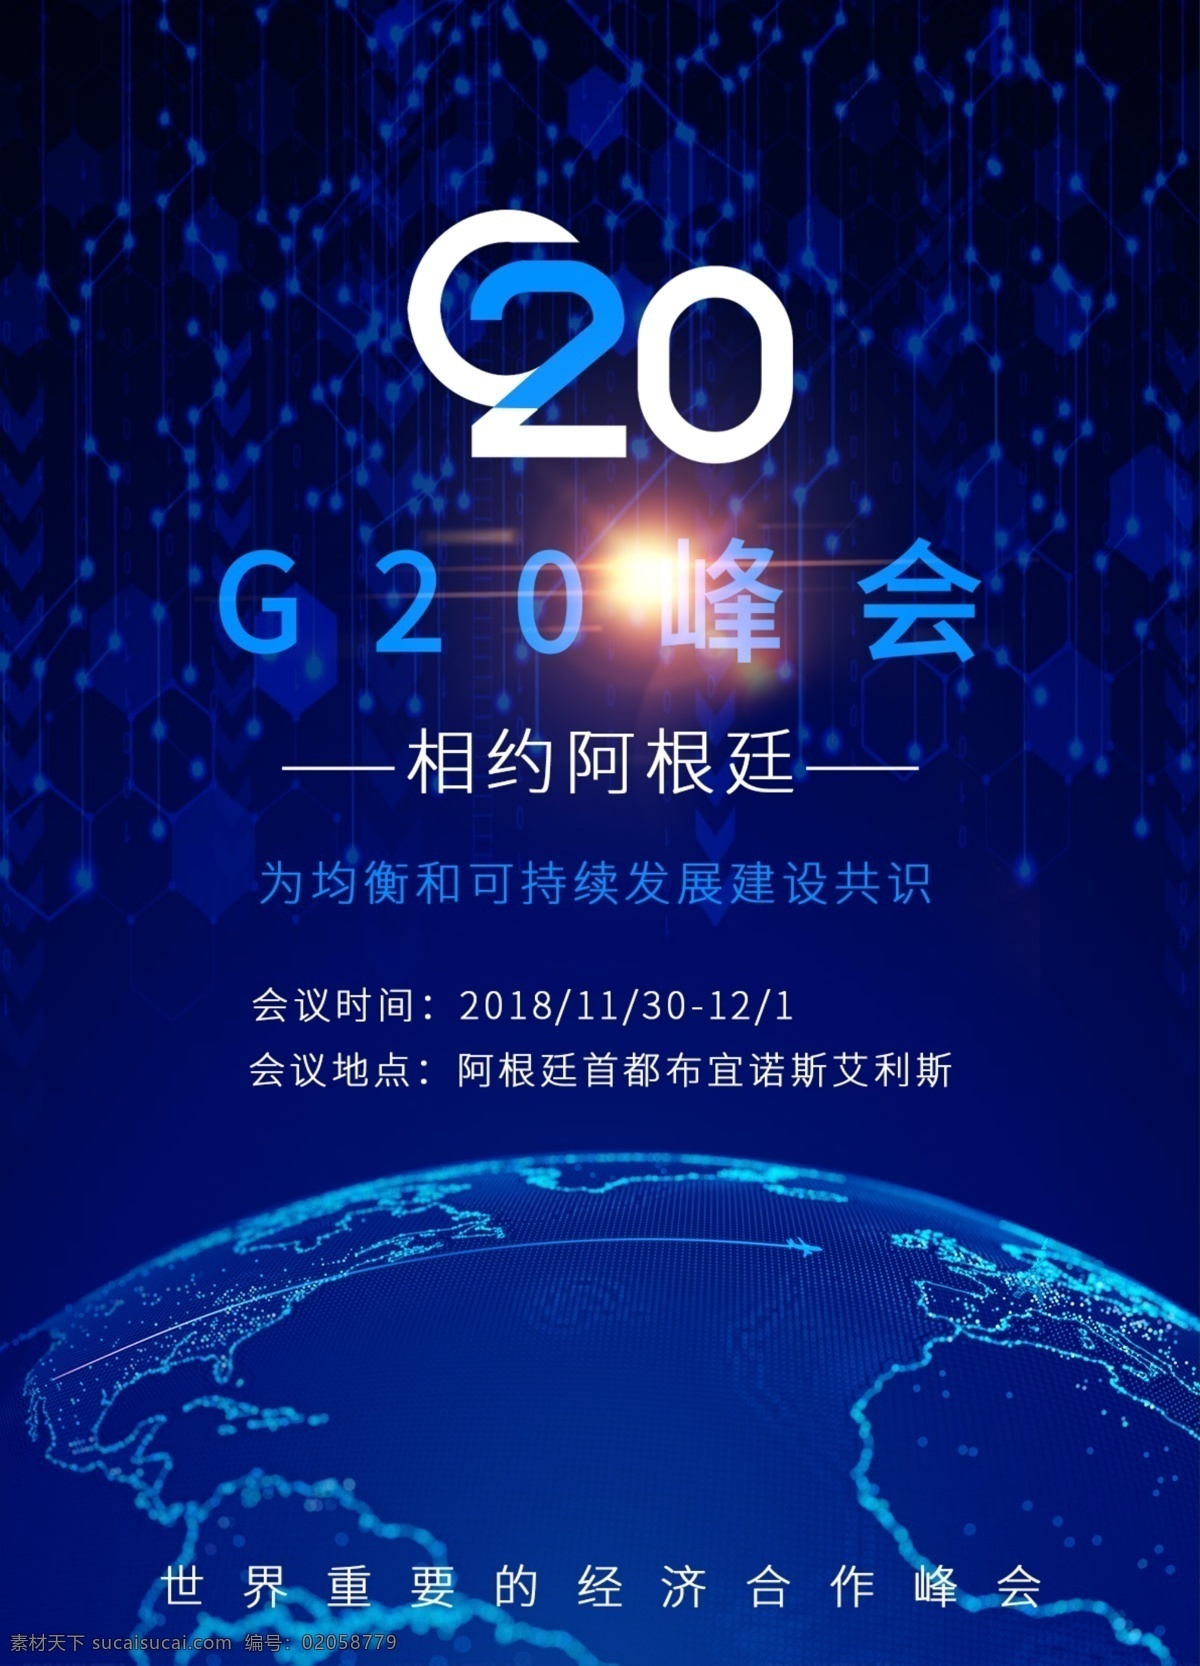 g20 峰会 相约 阿根廷 海报 g20峰会 2018 经济合作峰会